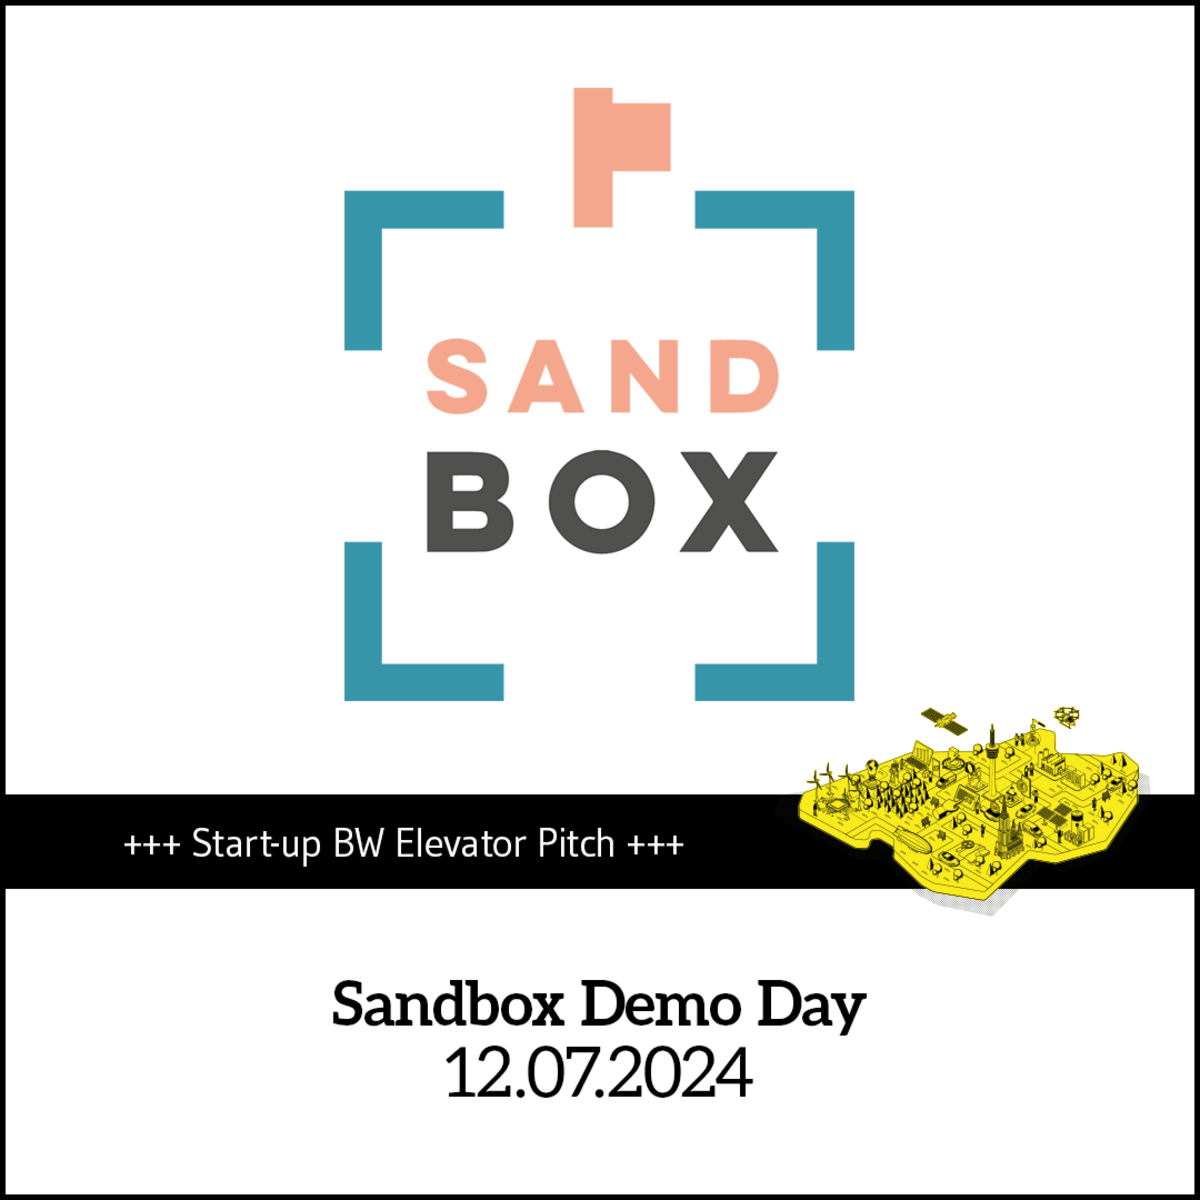 Termin-Kachel für den Vorentscheid "Sandbox Demo Day" am 12. Juli 2024.